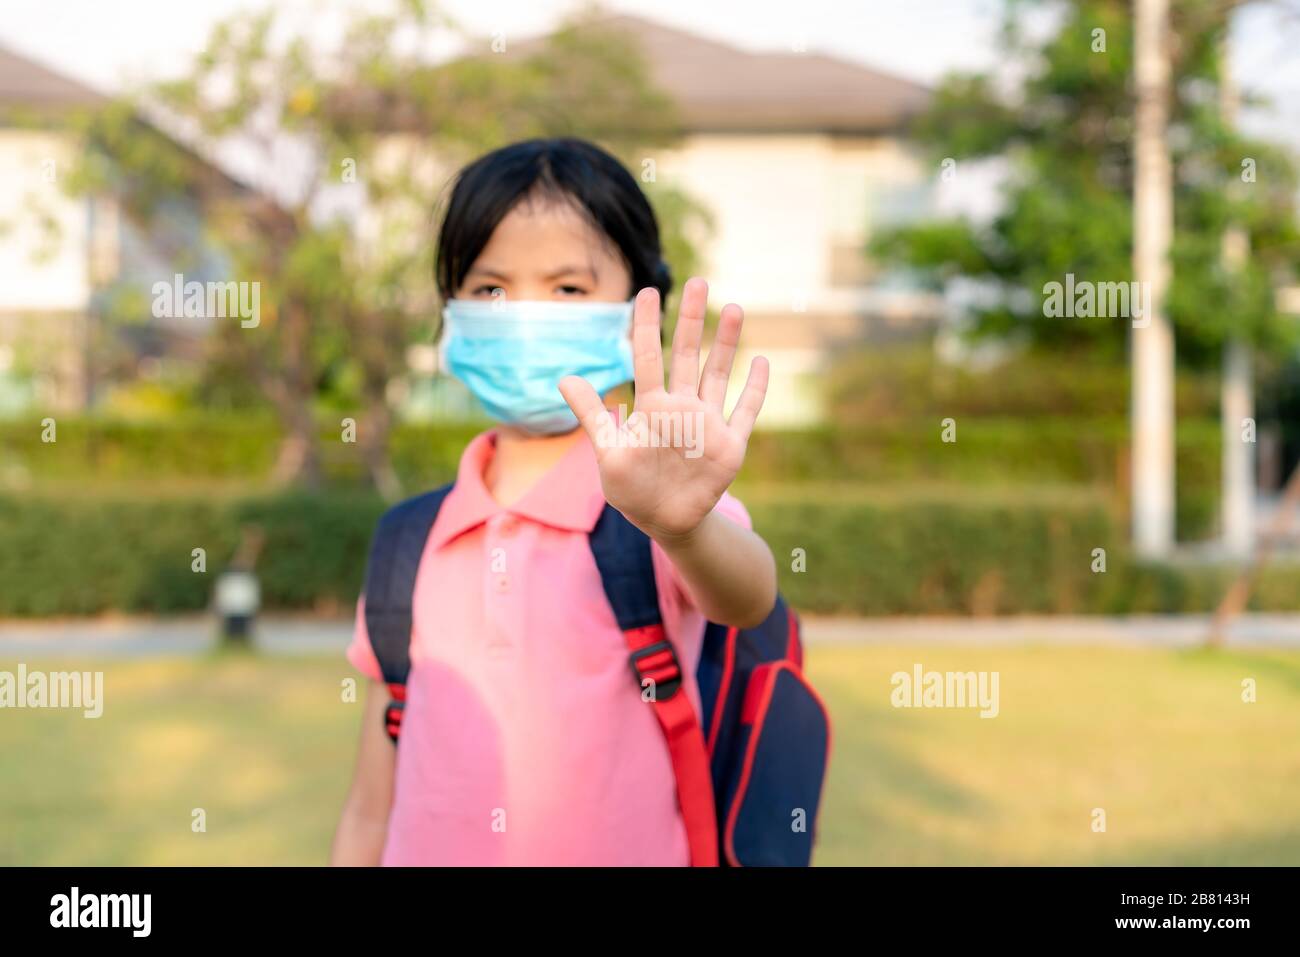 Covid-19 sintomi del virus dell'epidemia di Coronavirus e inquinamento atmosferico pm2.5 Concept.Little Asian ragazza che indossa la maschera per proteggere pm2.5 e mostrare stop mani gest Foto Stock